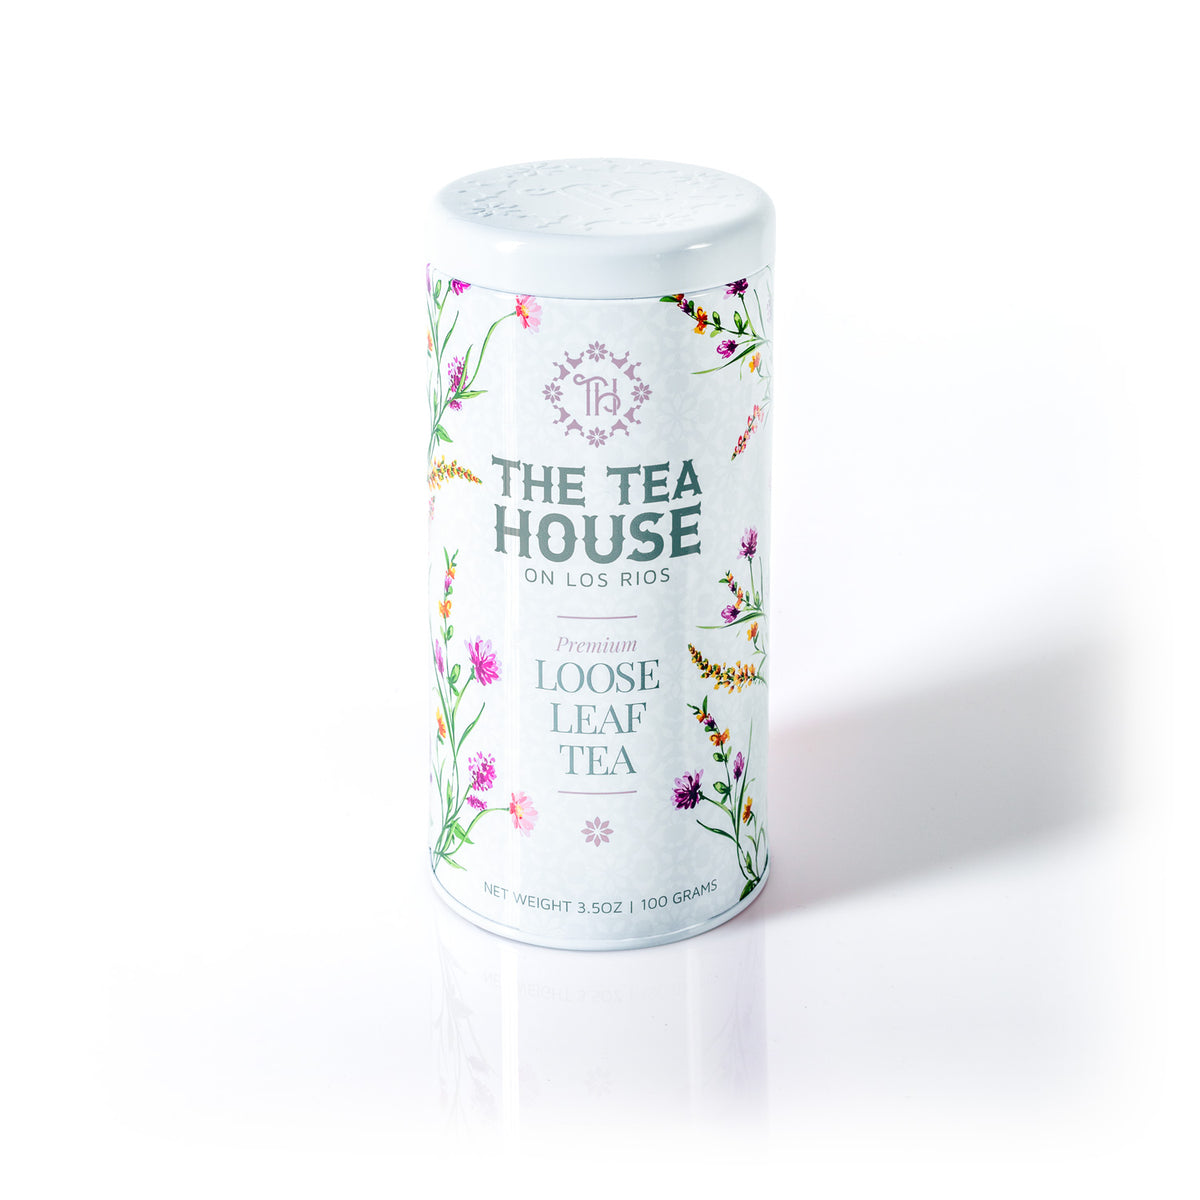 100g Loose Leaf Tea Tin from The Tea House on Los Rios - Fresh Batch